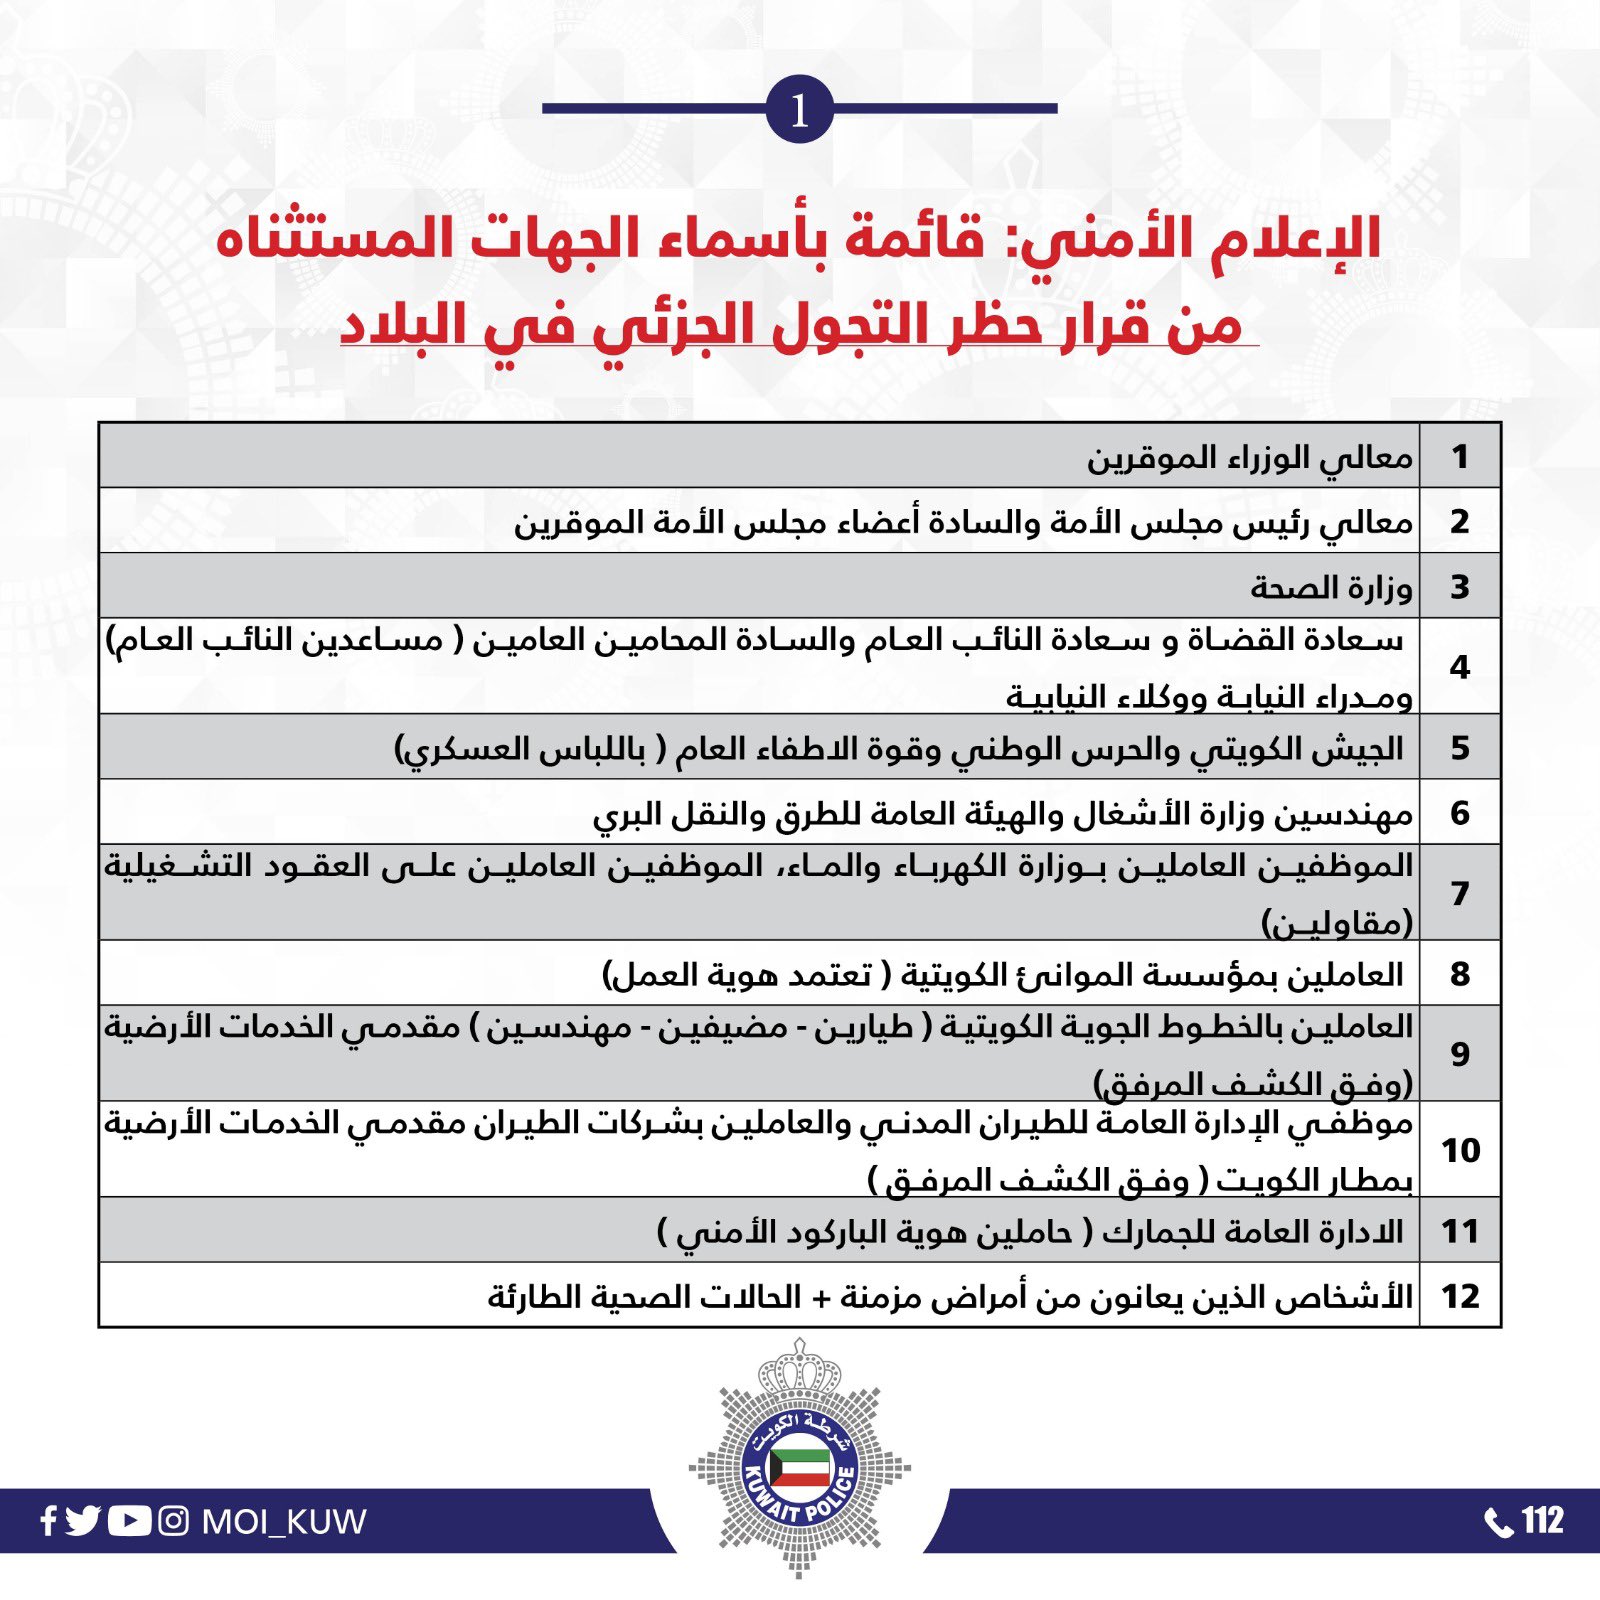 الجهات المستثناه من حظر التجول في الكويت 2021